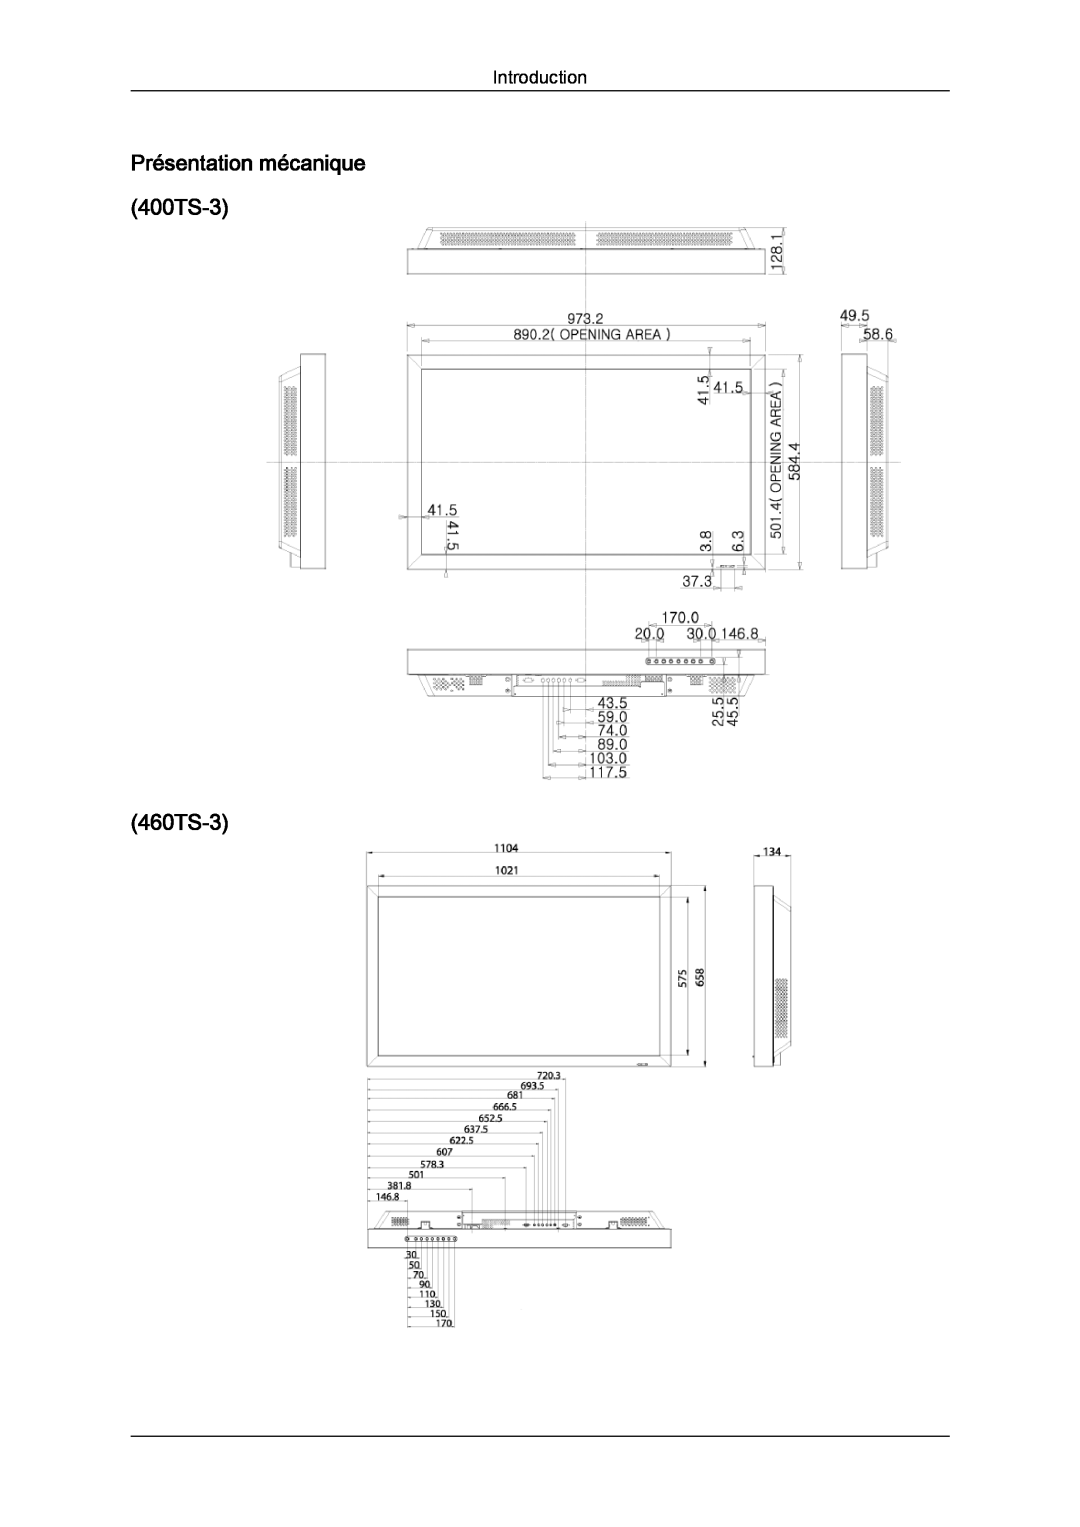 Samsung LH46CRPMBD/EN, LH46CRPMBC/EN, LH40CRPMBD/EN, LH40CRPMBC/EN manual Présentation mécanique 400TS-3 460TS-3, Introduction 